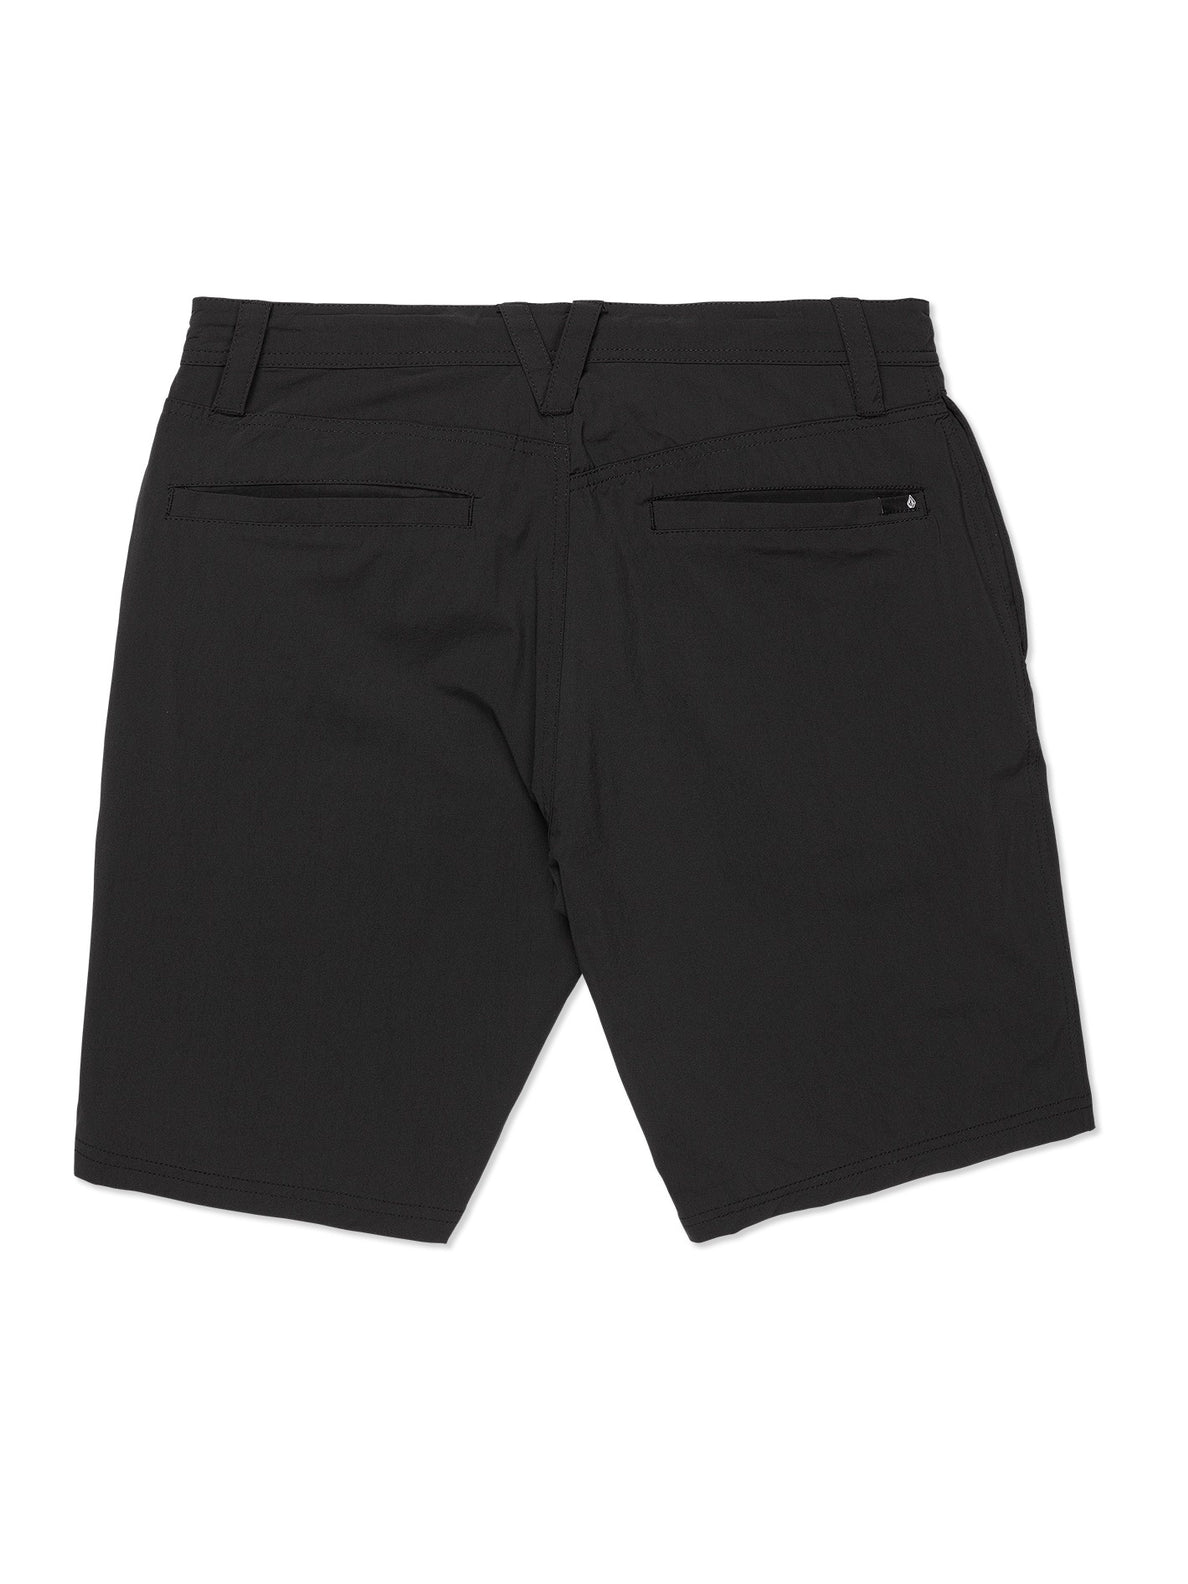 Voltripper Hybrid Shorts - Black